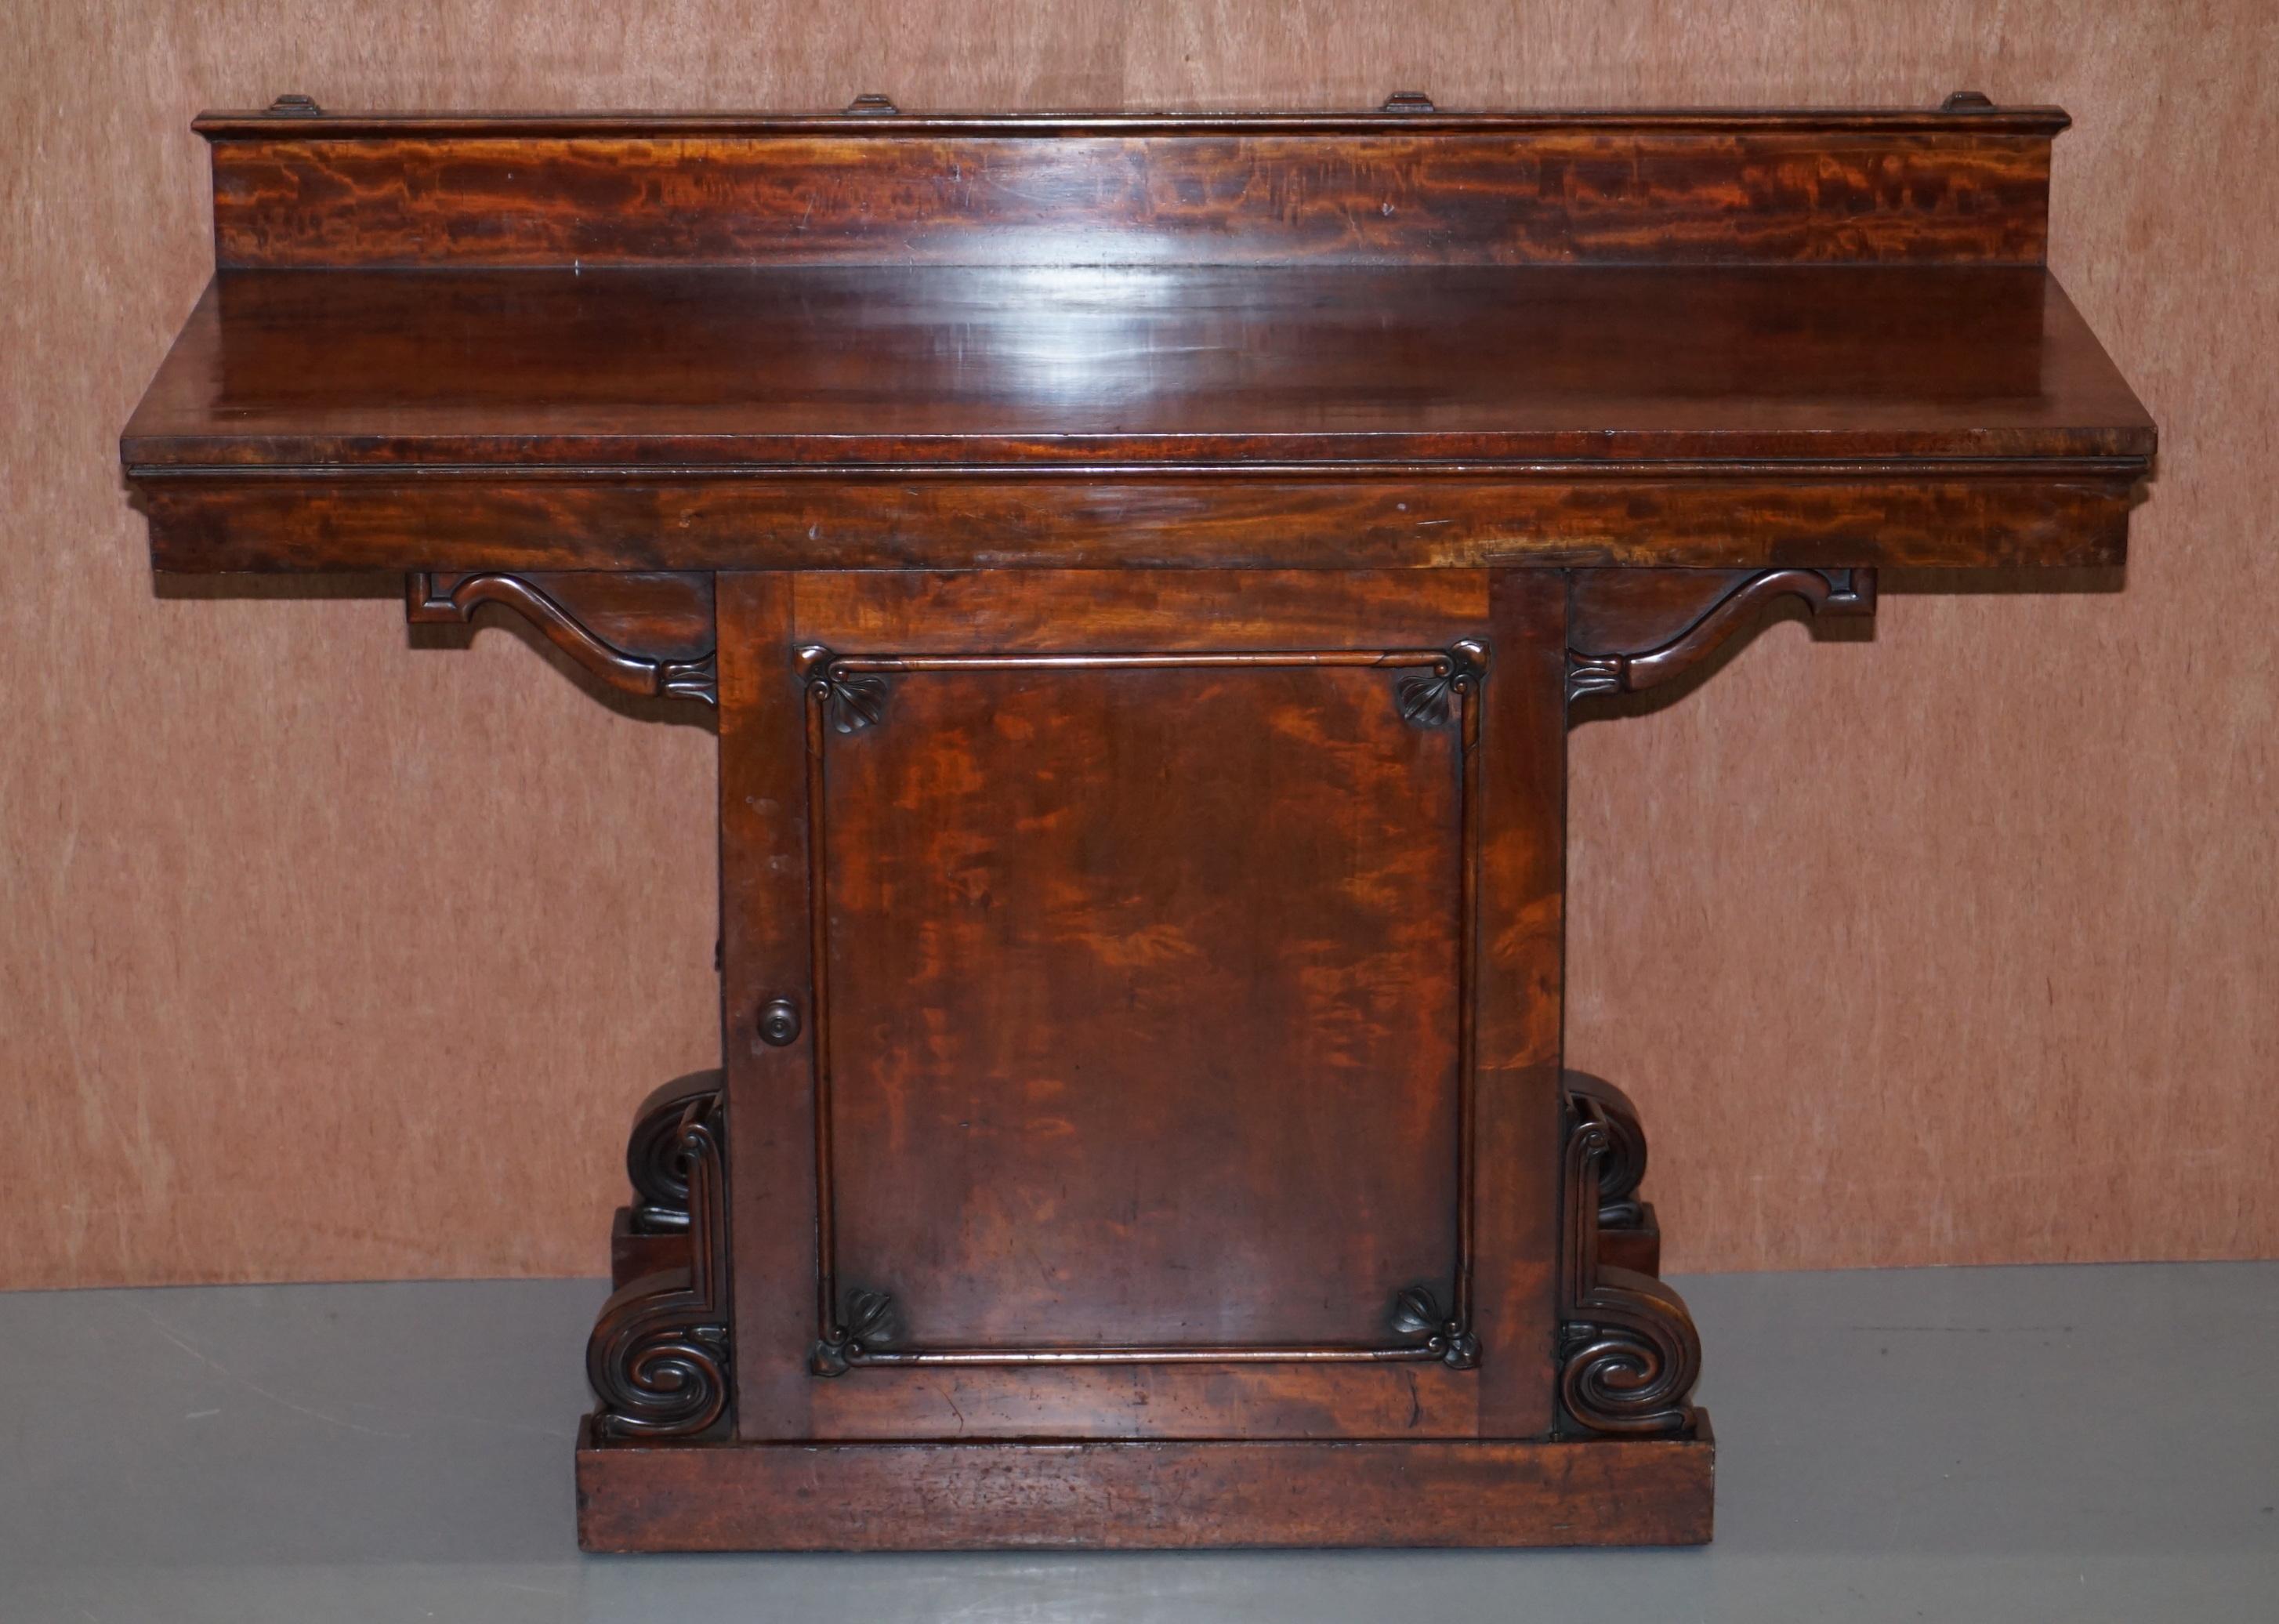 Wir freuen uns sehr, dieses erhabene Weinkeller-Sideboard aus kubanischem Mahagoni von William IV. aus dem Jahr 1830 zum Verkauf anzubieten

Ein sehr feines und bedeutendes Möbelstück, das Holz ist ganz aus kubanischem Mahagoni und mit kunstvollen